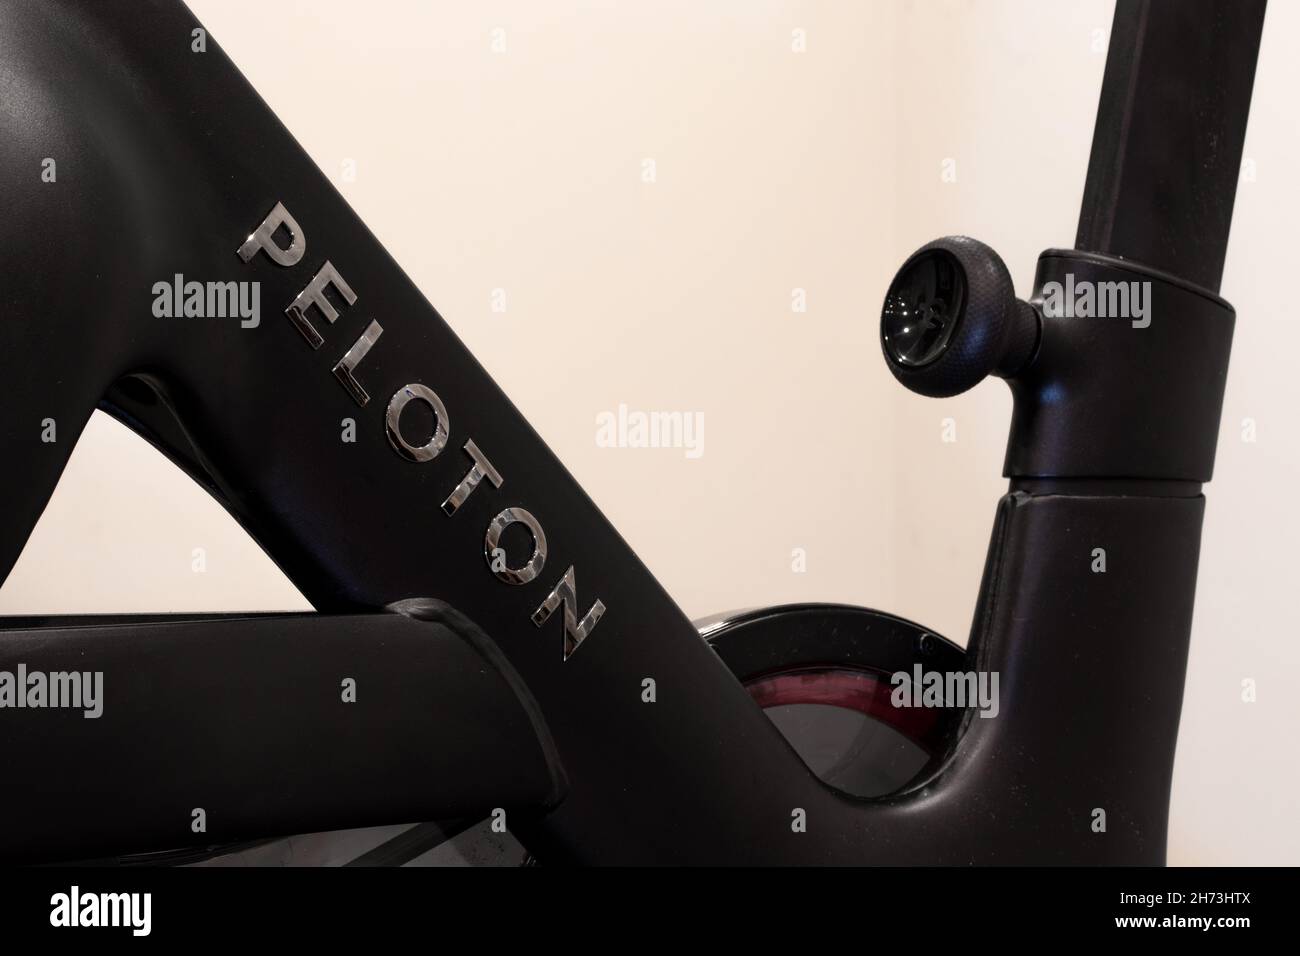 Un logo en forme de Peloton chromé sur le corps principal du tout nouveau Peloton Bike+, un vélo d'exercice populaire. Banque D'Images